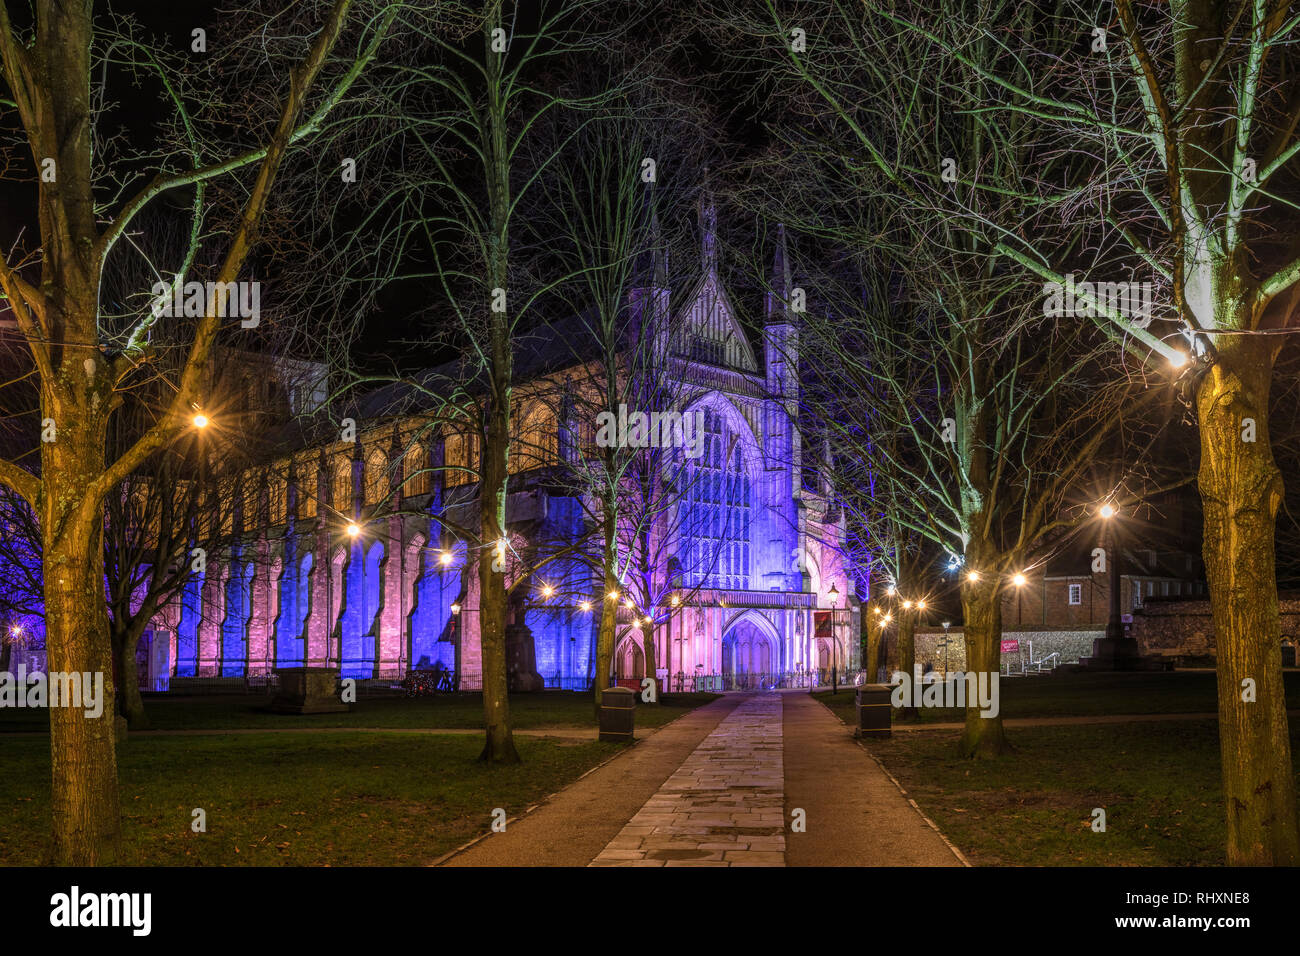 La cathédrale de Winchester, Hampshire, Angleterre, Royaume-Uni Banque D'Images